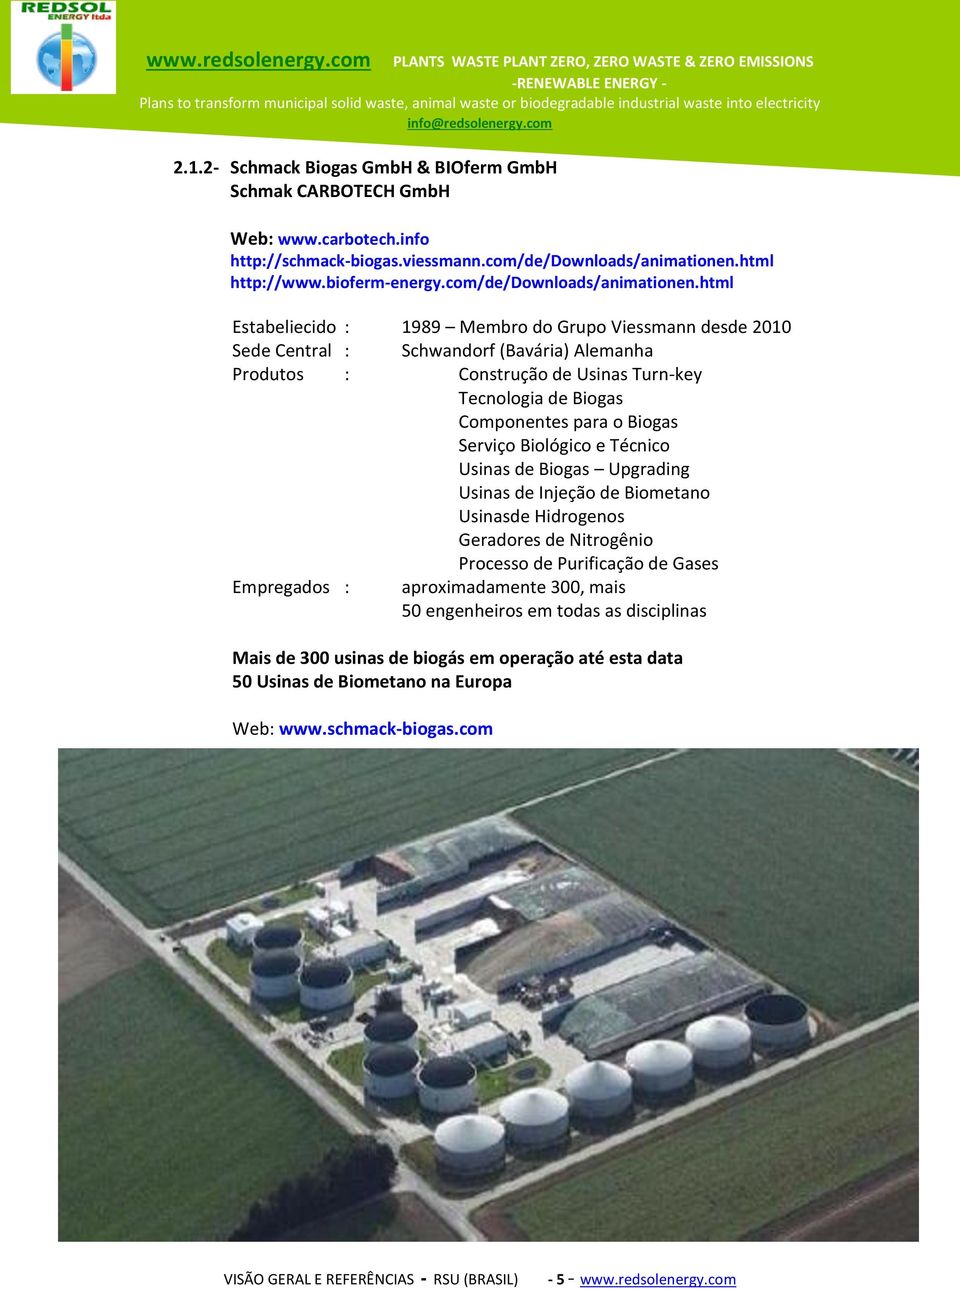 html Estabeliecido : 1989 Membro do Grupo Viessmann desde 2010 Sede Central : Schwandorf (Bavária) Alemanha Produtos : Construção de Usinas Turn-key Tecnologia de Biogas Componentes para o Biogas